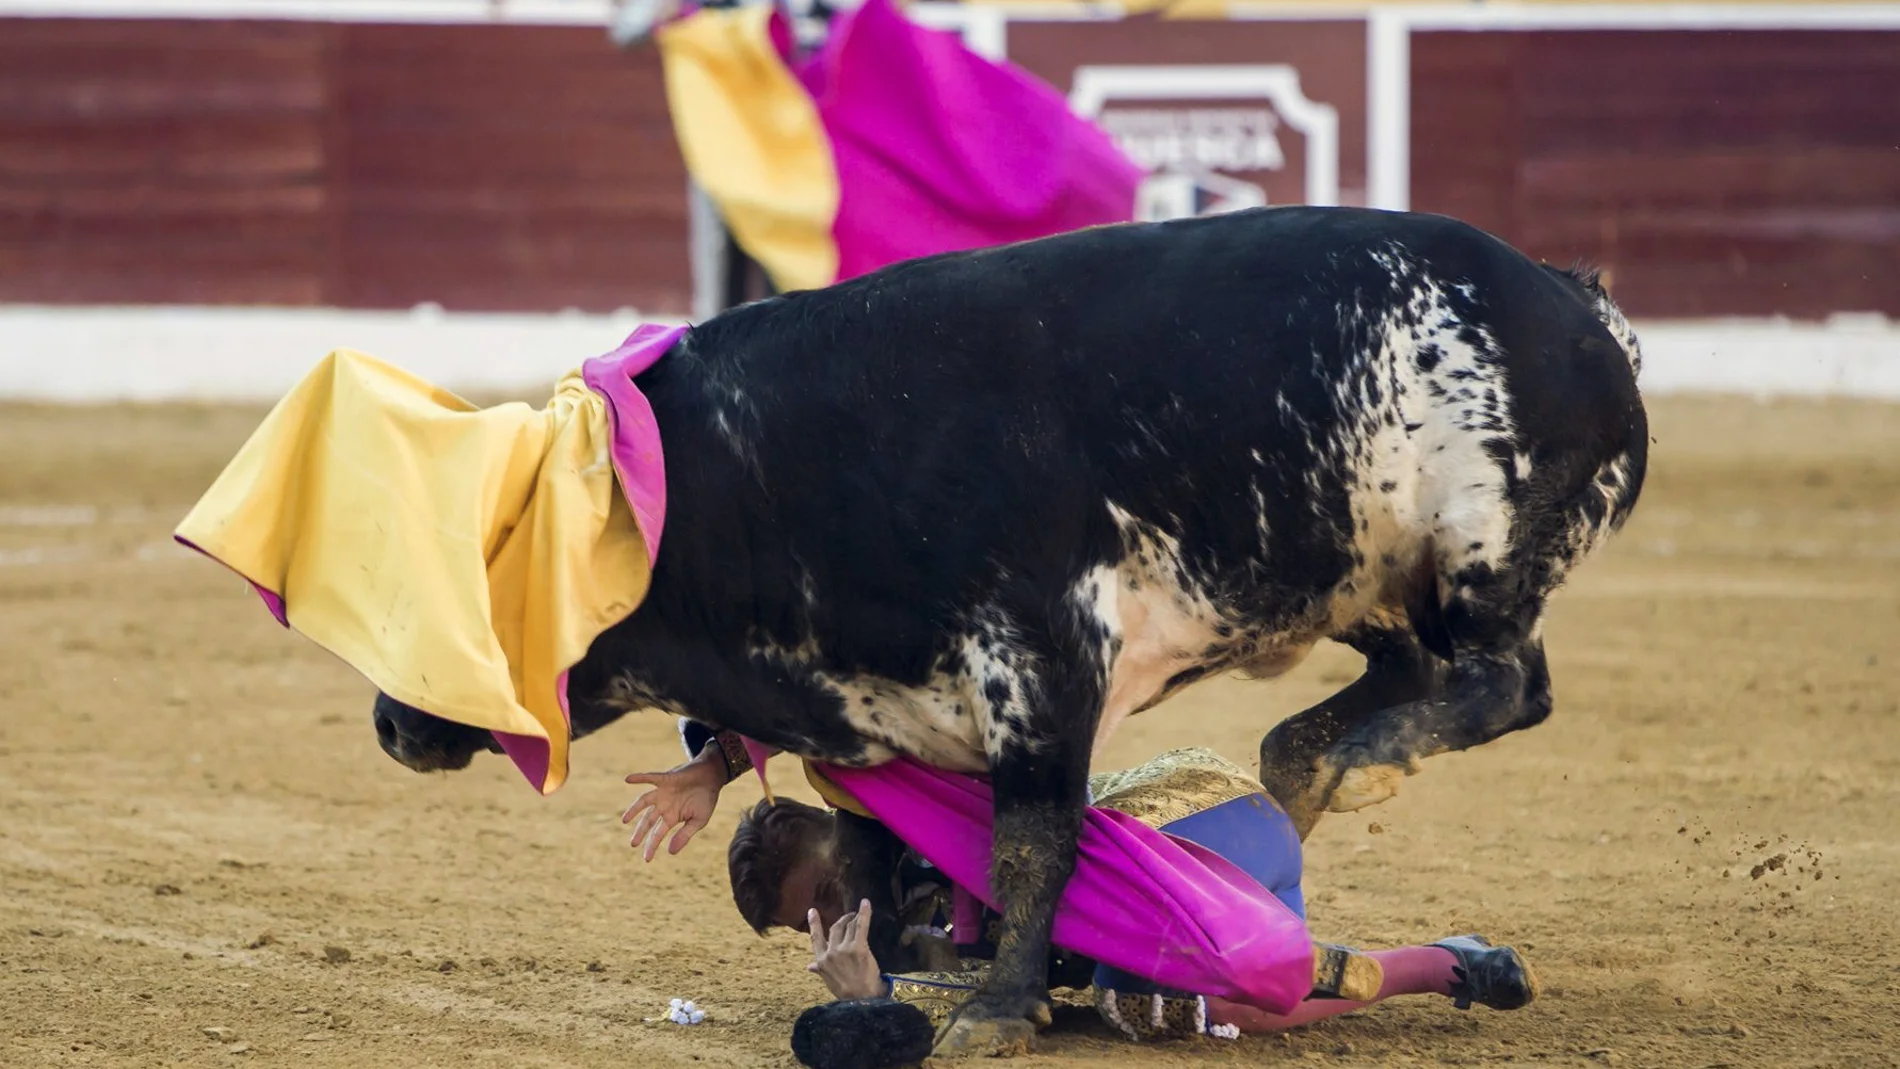 El matador de toros Francisco Rivera Ordóñez "Paquirri" sufre una cogida